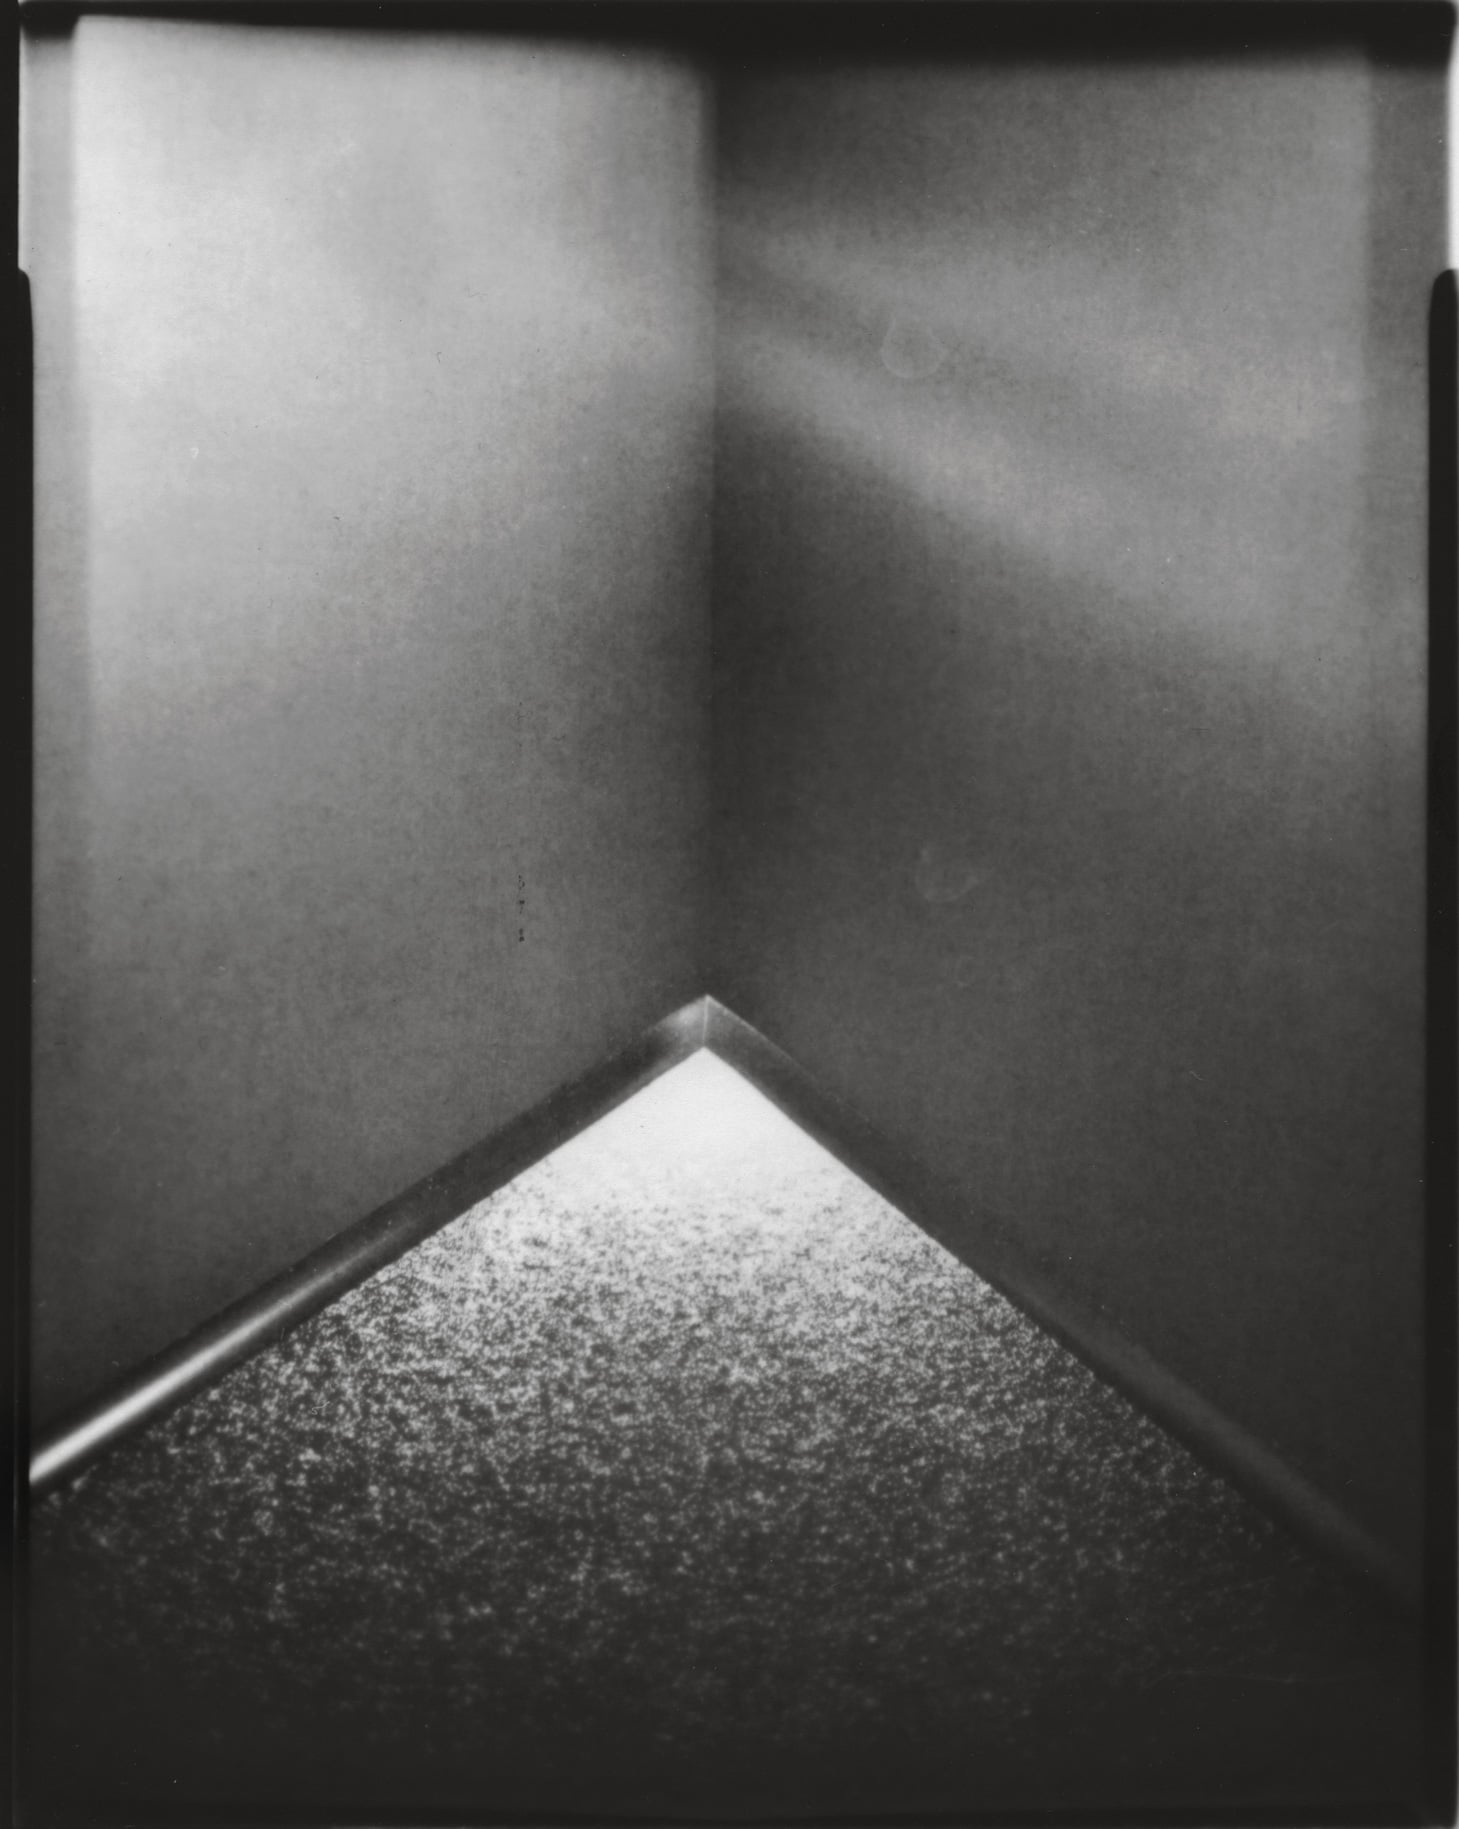 Tine Edel | Die Ecke, 2016 | Belichtung eines 4 x 5“ Papiernegativ, 13 x 18 cm analoges Fotopapier von Ilford